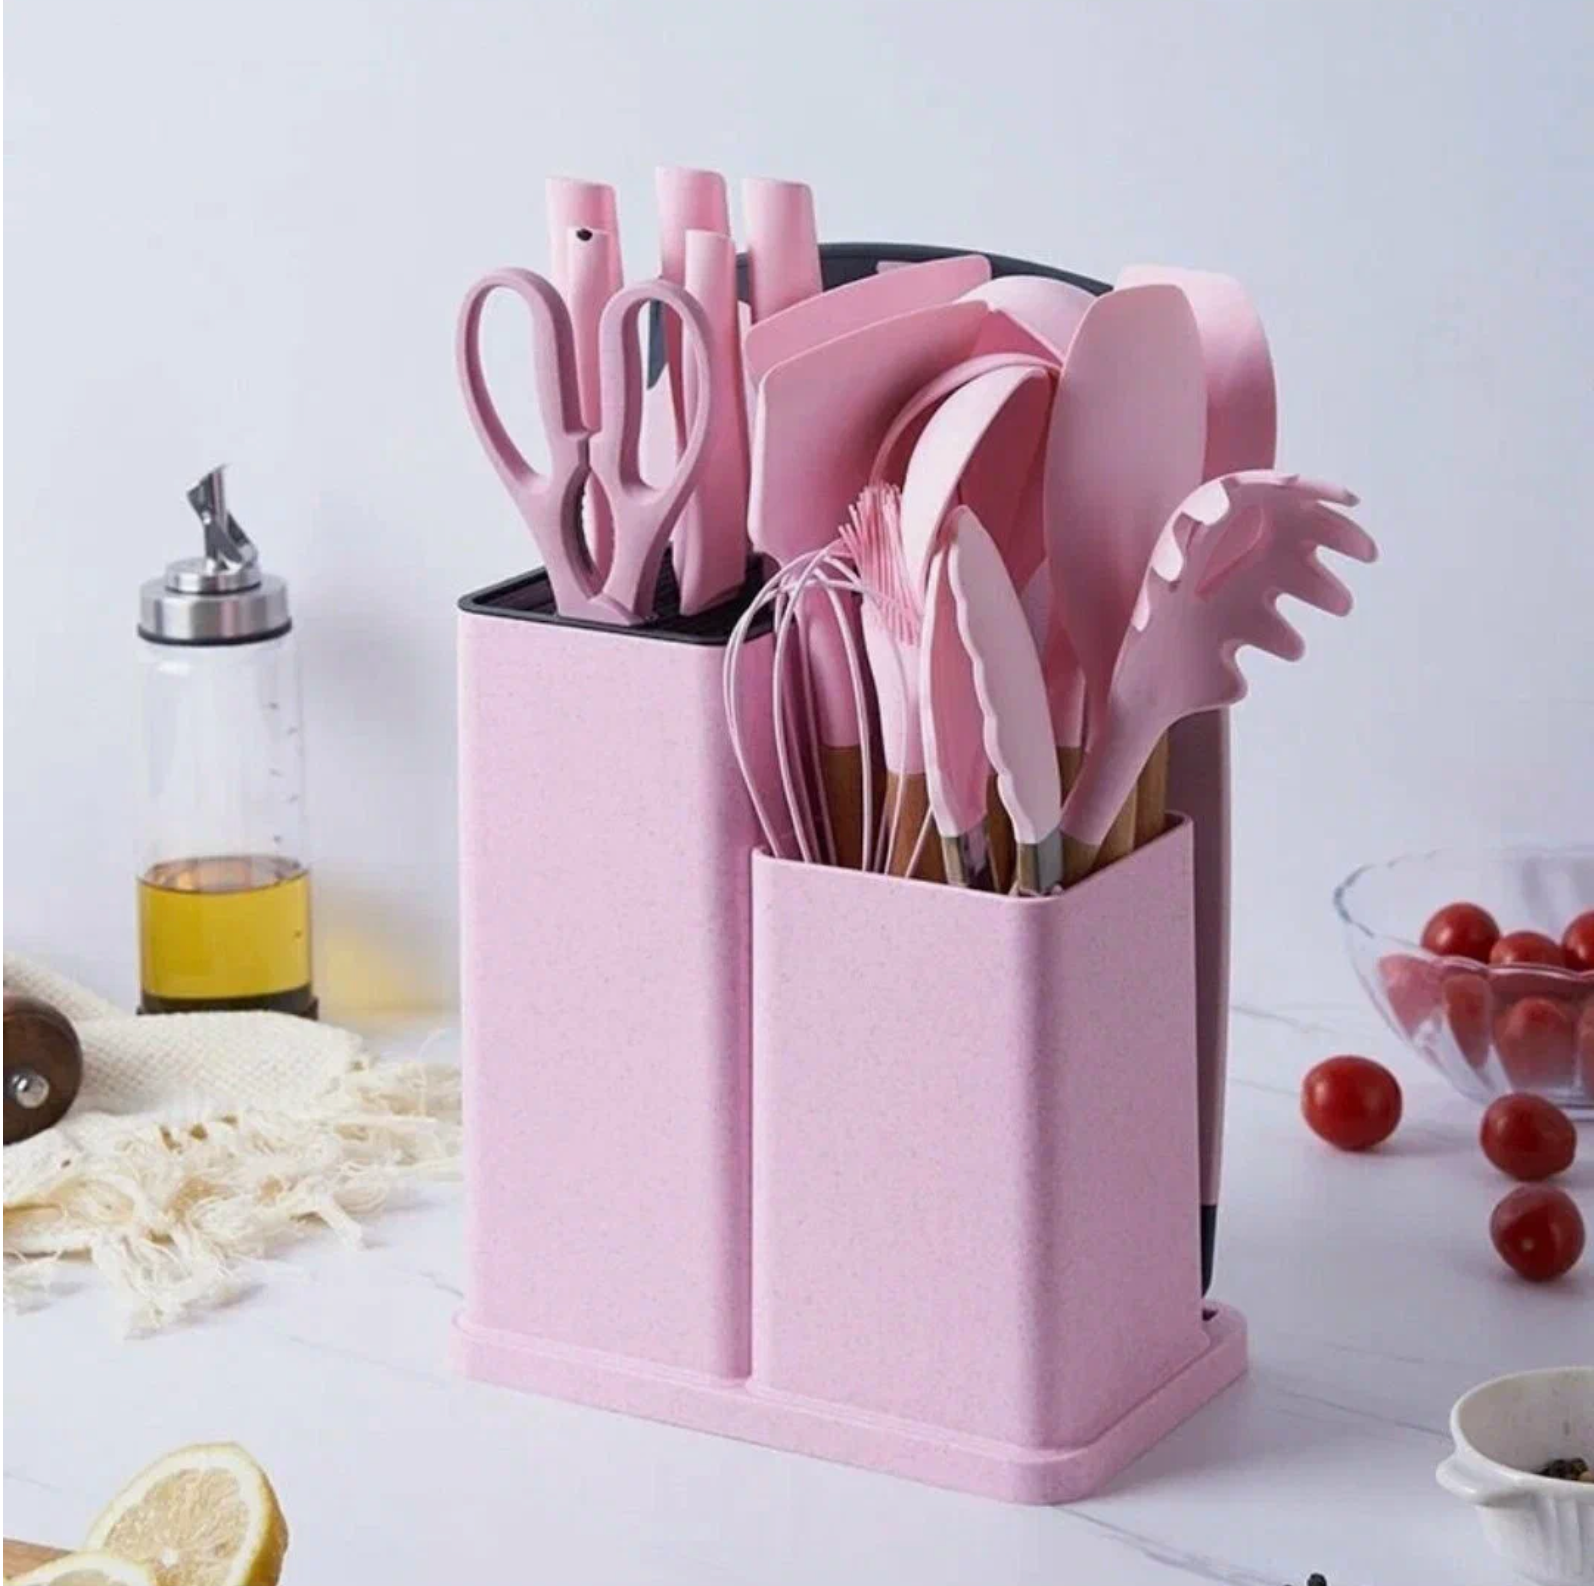 Набор кухонных предметов розовый / кухонный набор / кухонные принадлежности / кухонная навеска / комплект для кухни /19 предметов